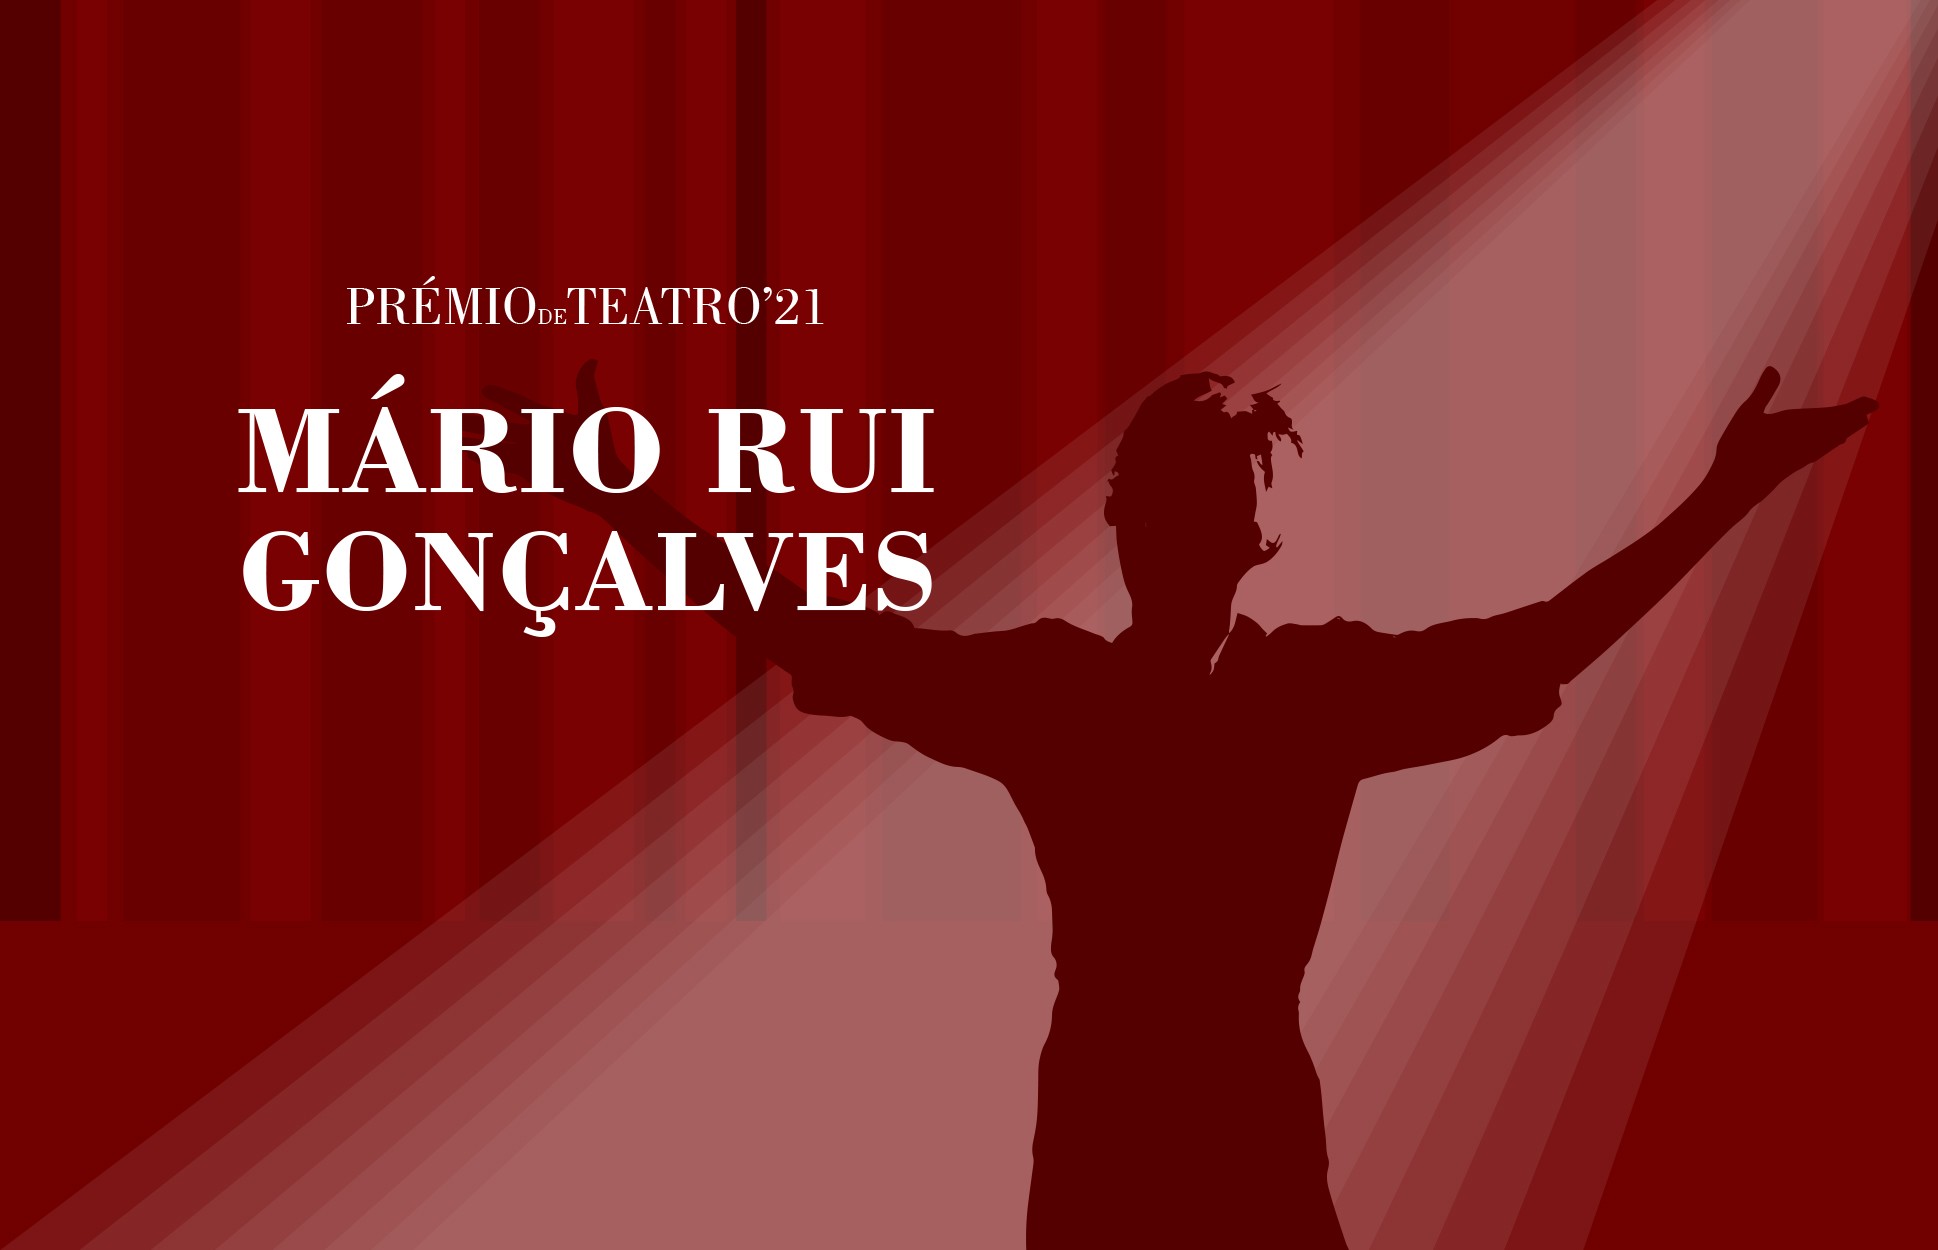 Estão abertas as candidaturas ao Prémio de Teatro Mário Rui Gonçalves